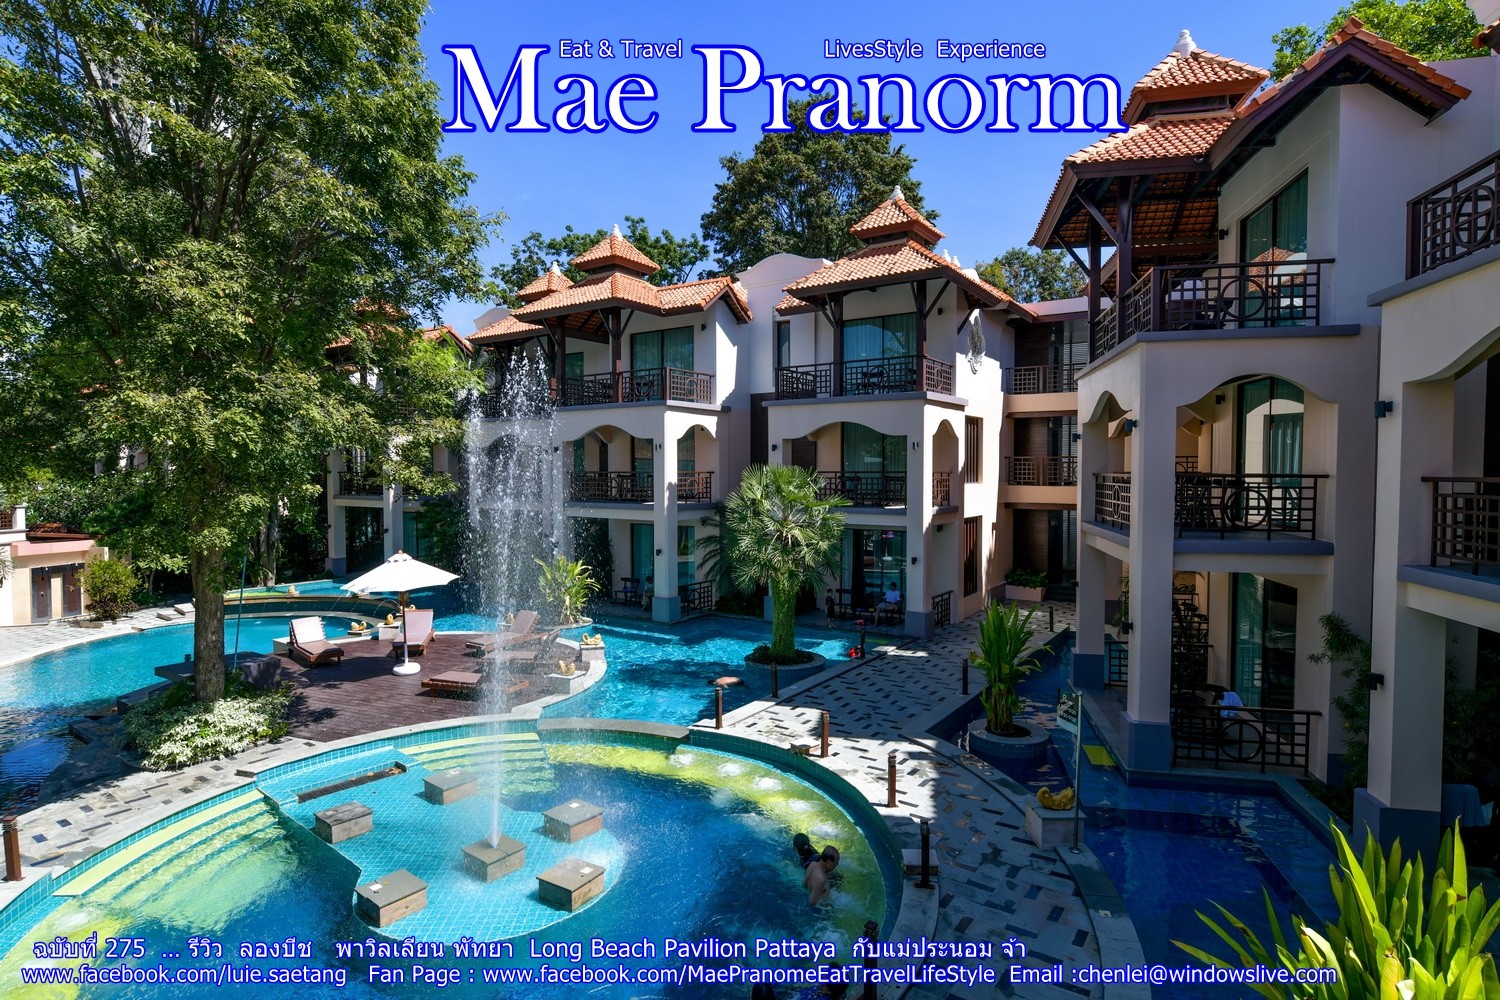 รีวิว โรงแรม ลองบีช พาวิลเลียน พัทยา Long Beach Pavilion Pattaya  กับแม่ประนอม จ้า - Pantip